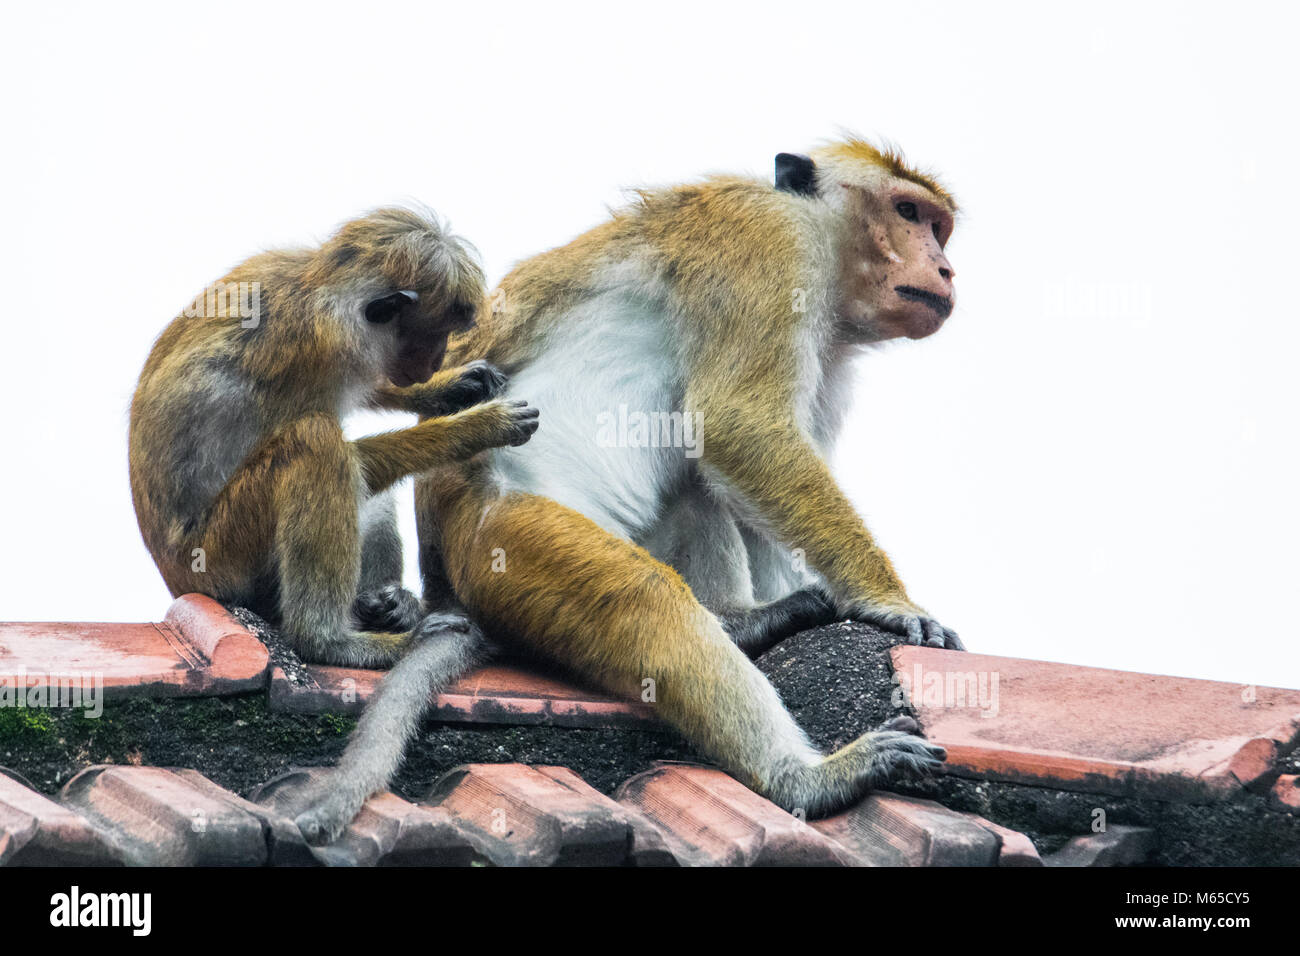 Monkey checking for fleas Stock Photo